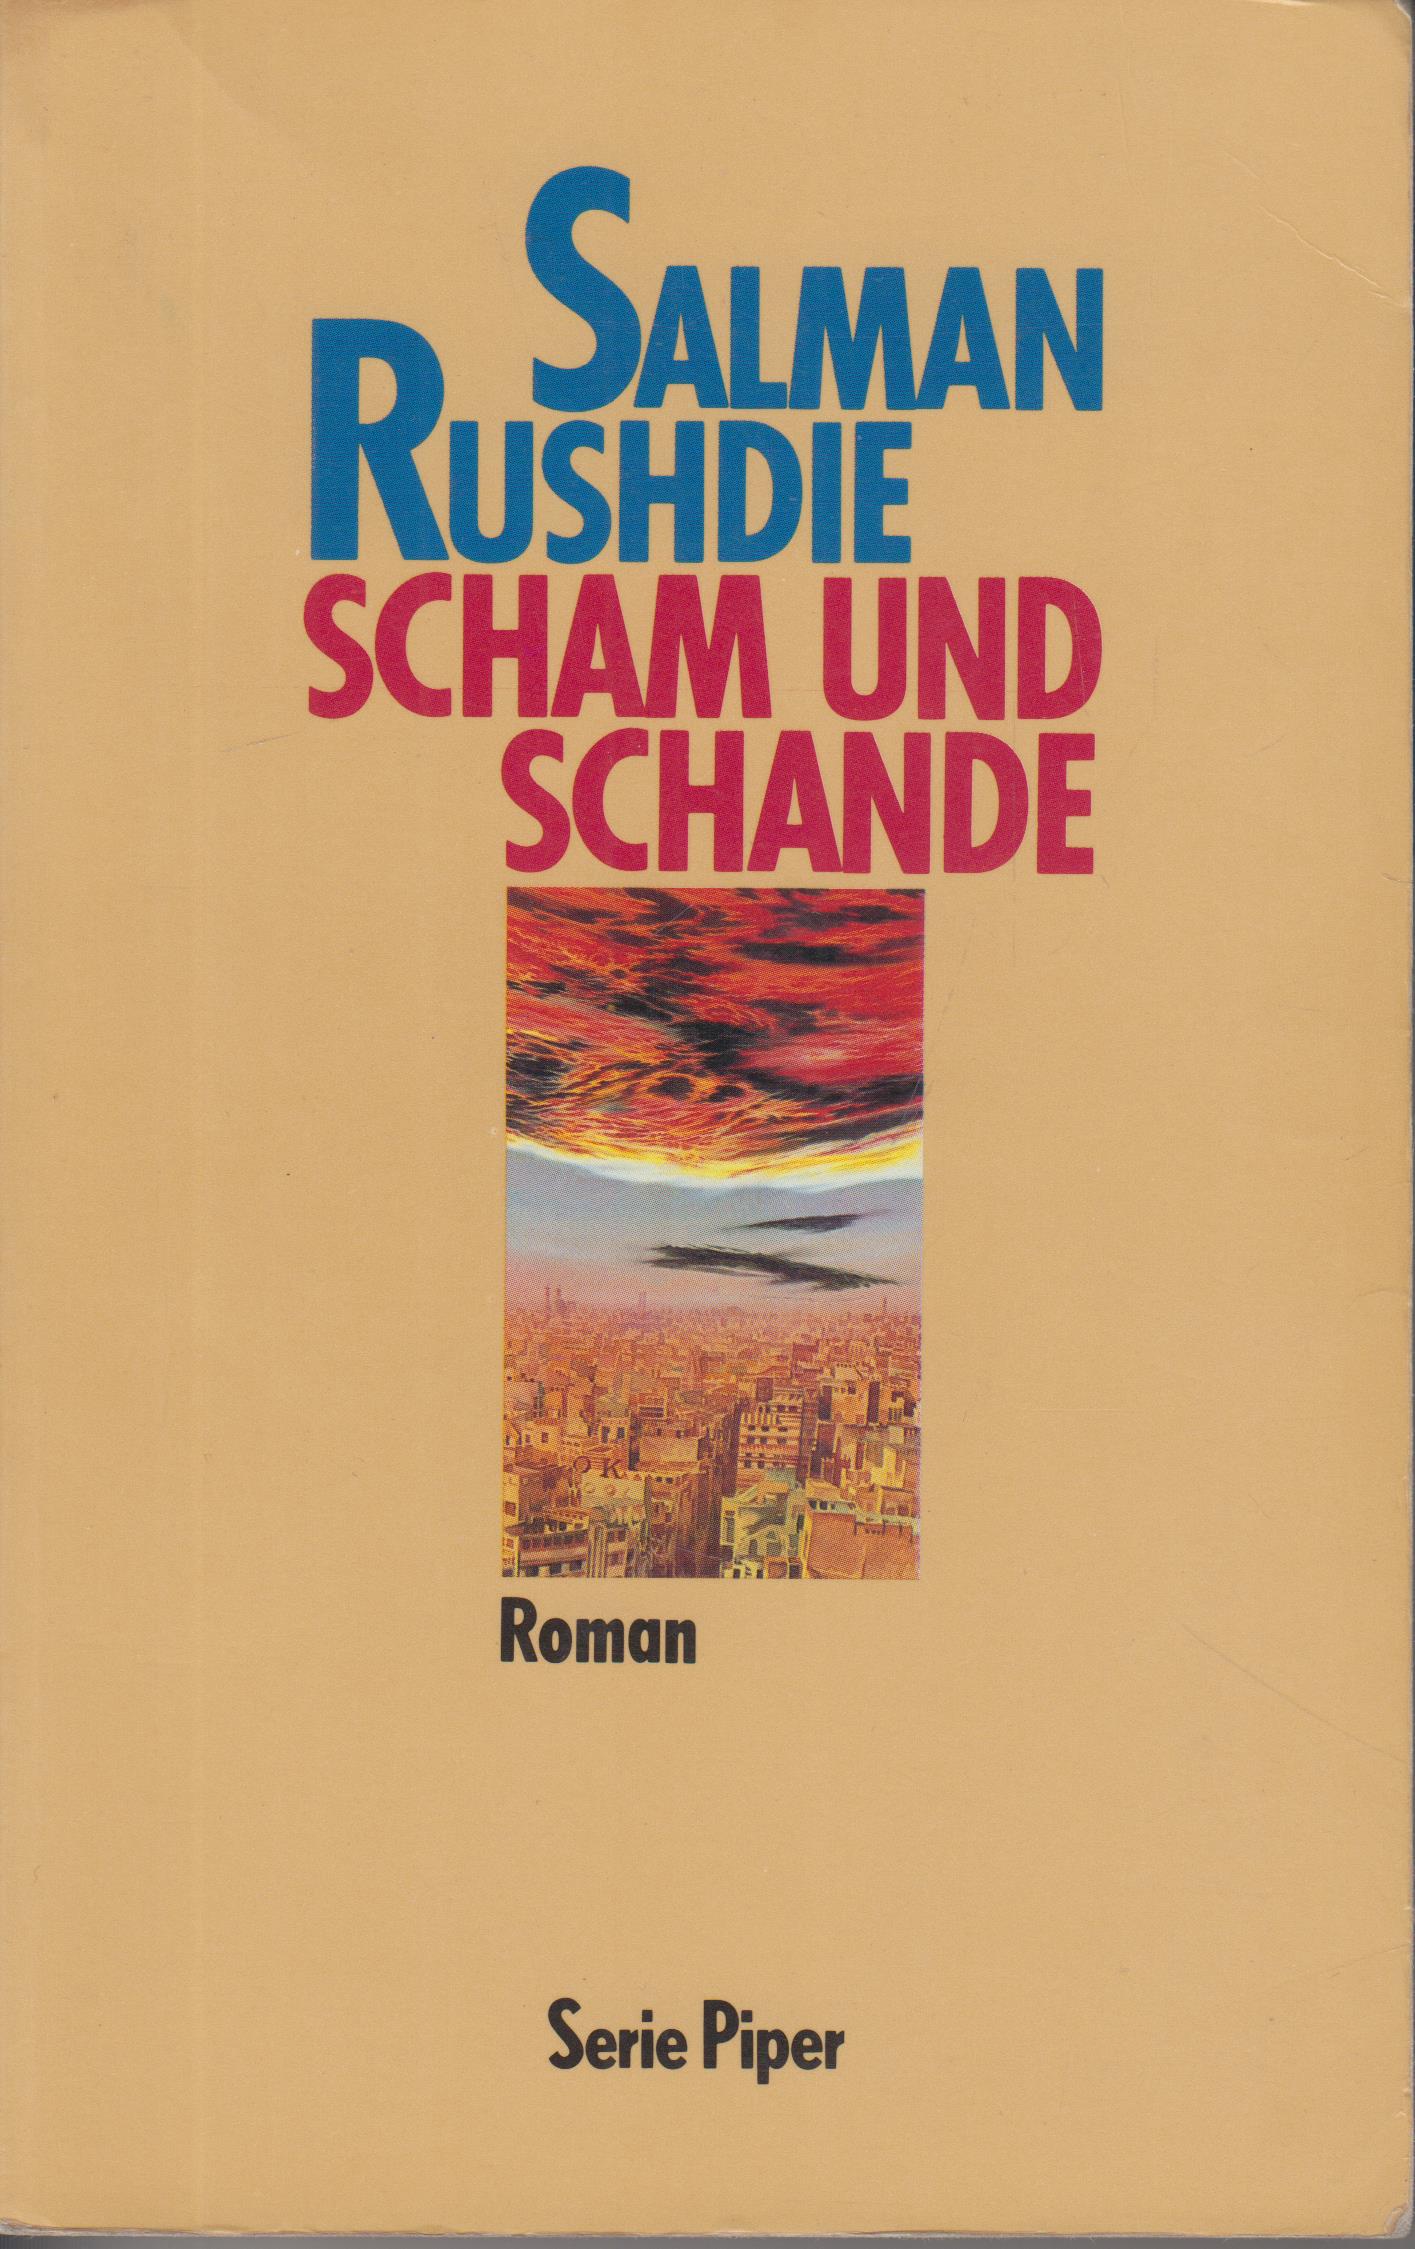 Salman Rushdie: Scham und Schande (German language, 1985, R. Piper)